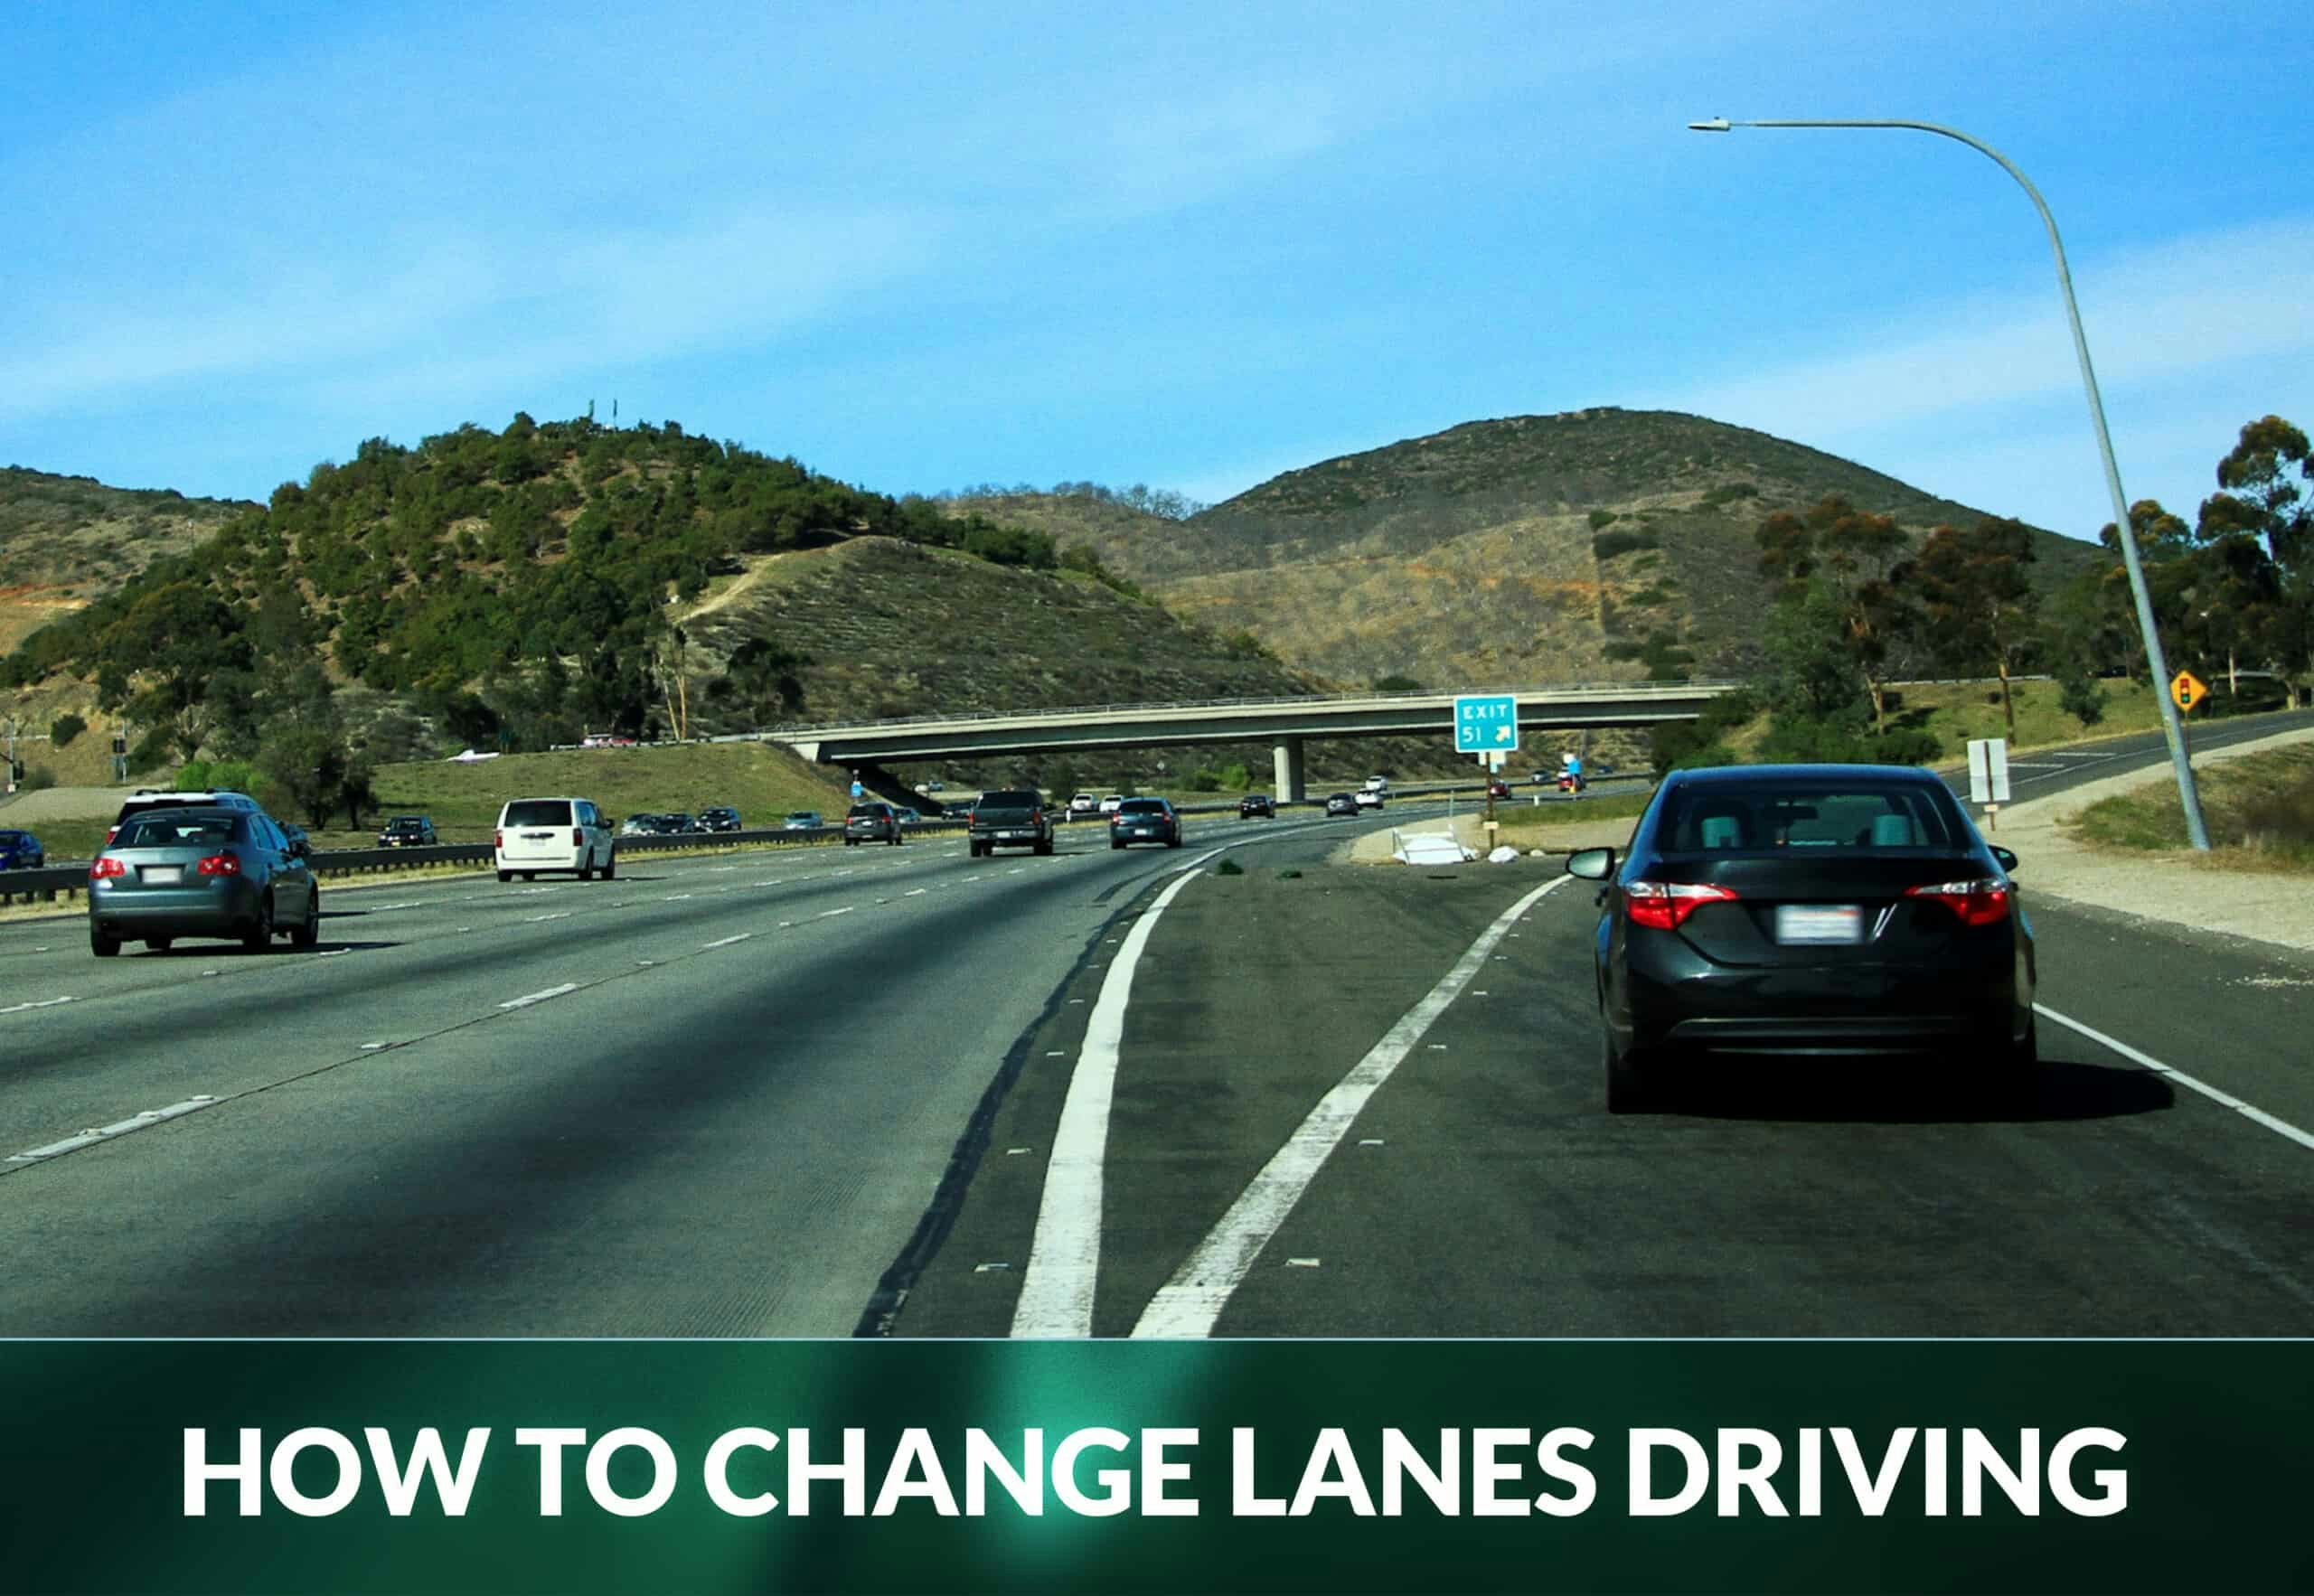 Hazards of Changing Lanes